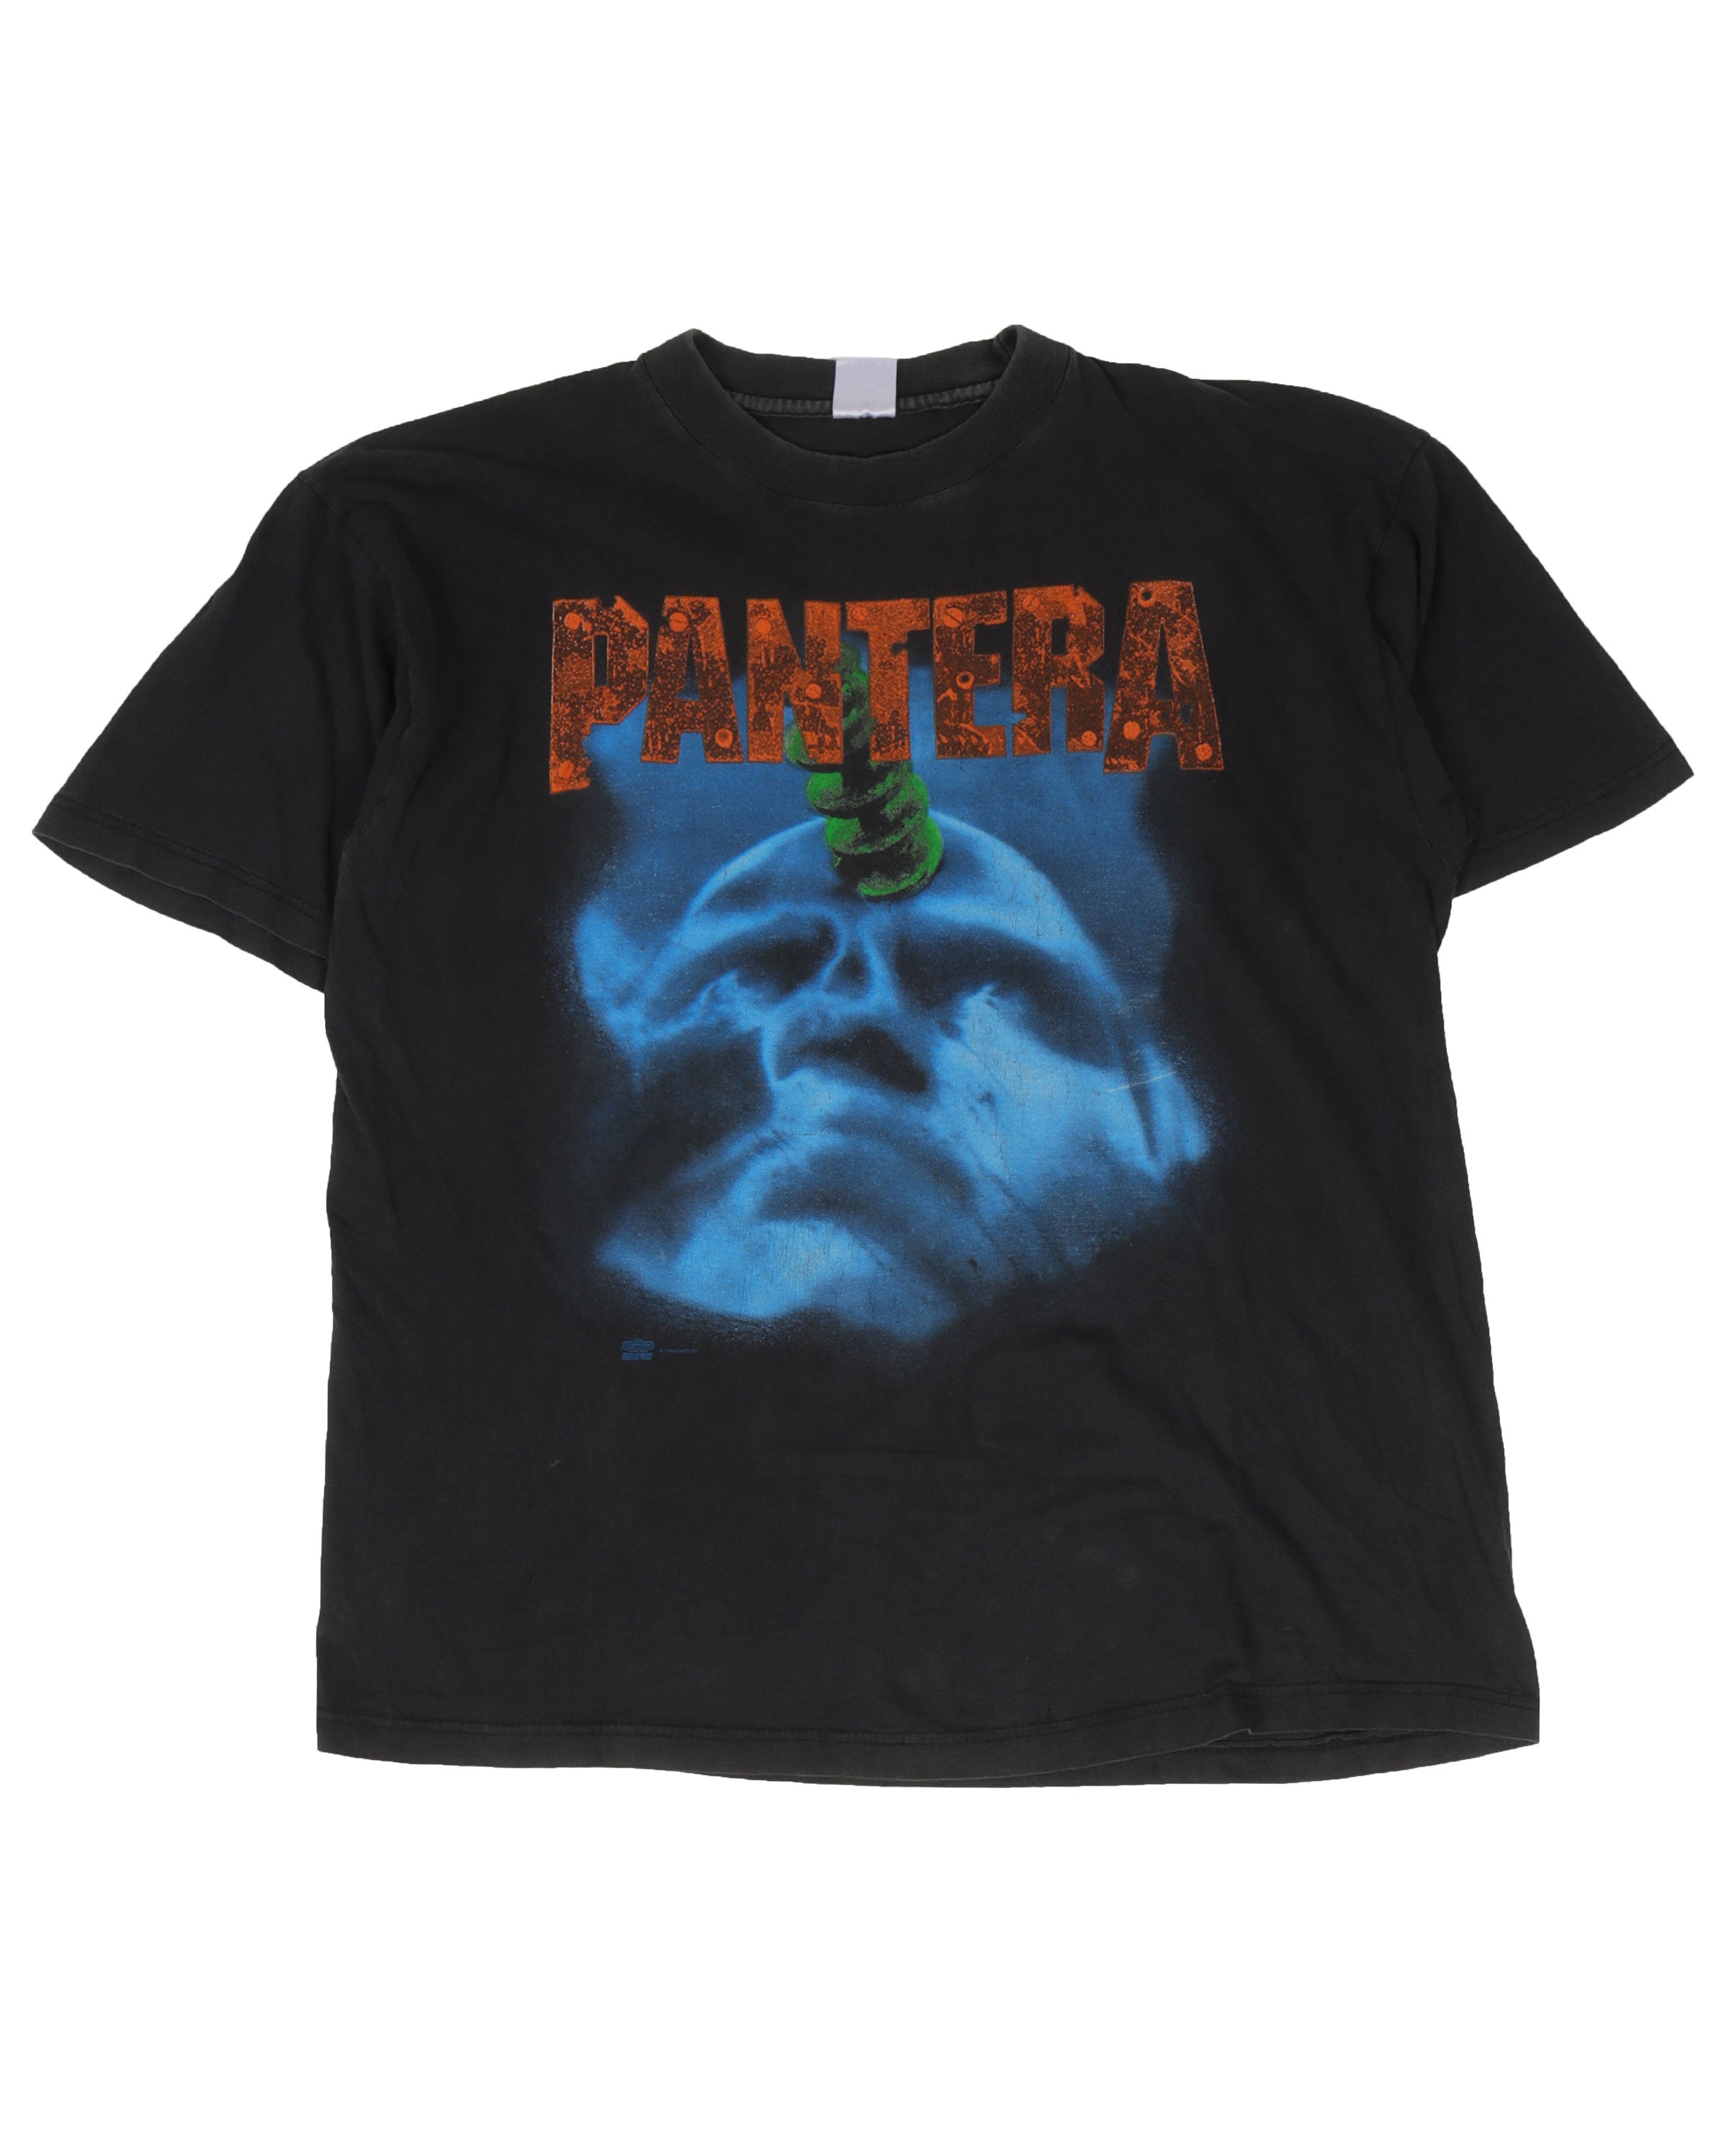 Pantera 1994 "Far Beyond Driven" Tour T-Shirt